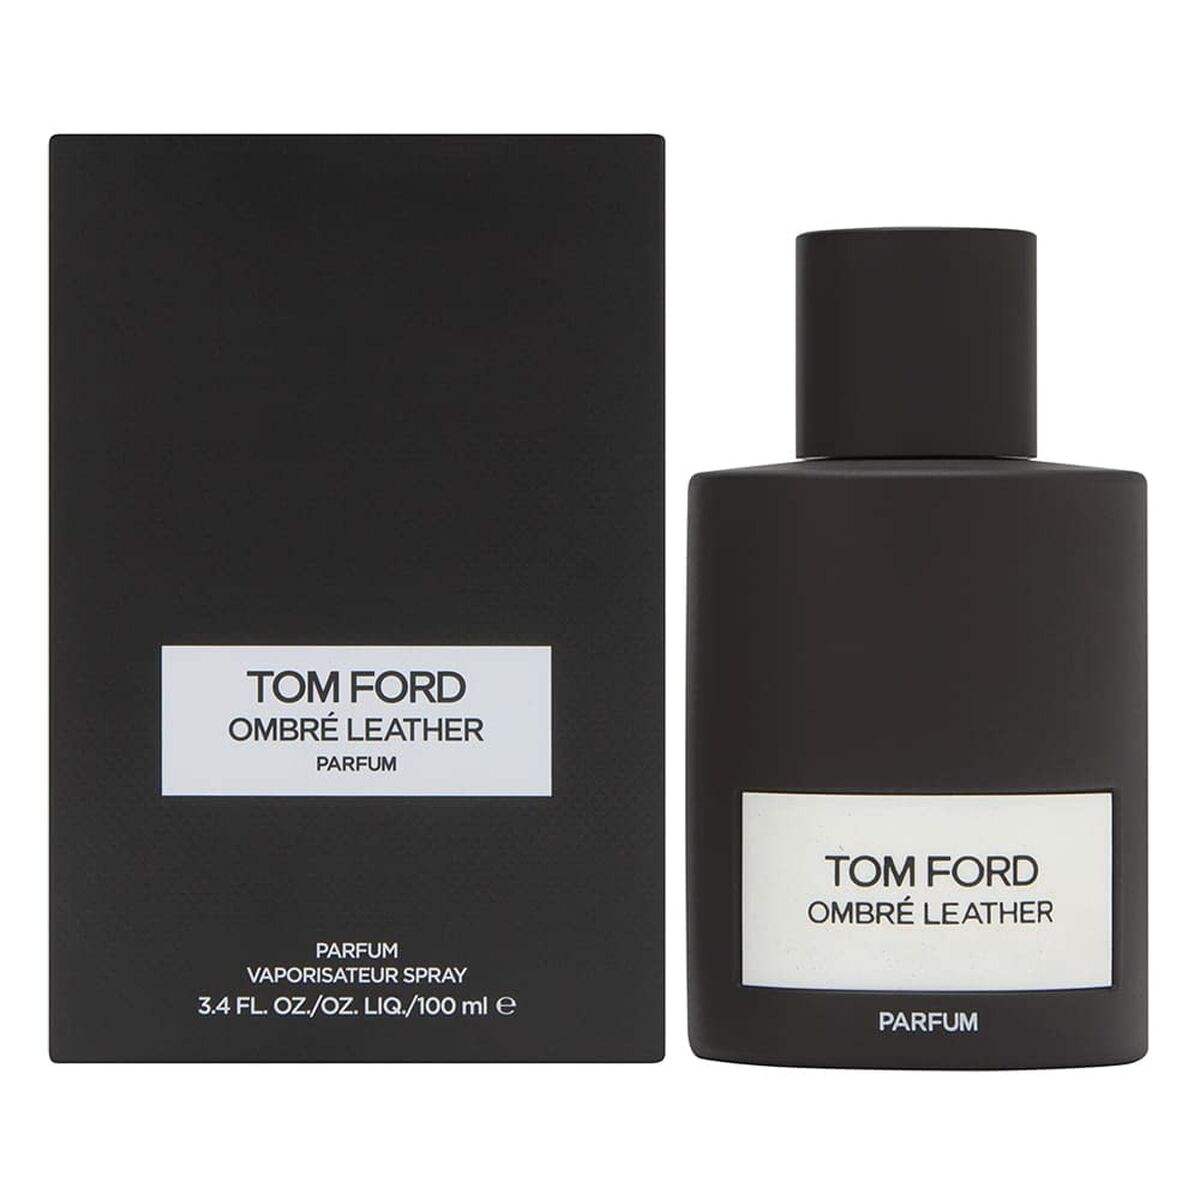 Parfum Mixte Tom Ford 100 ml